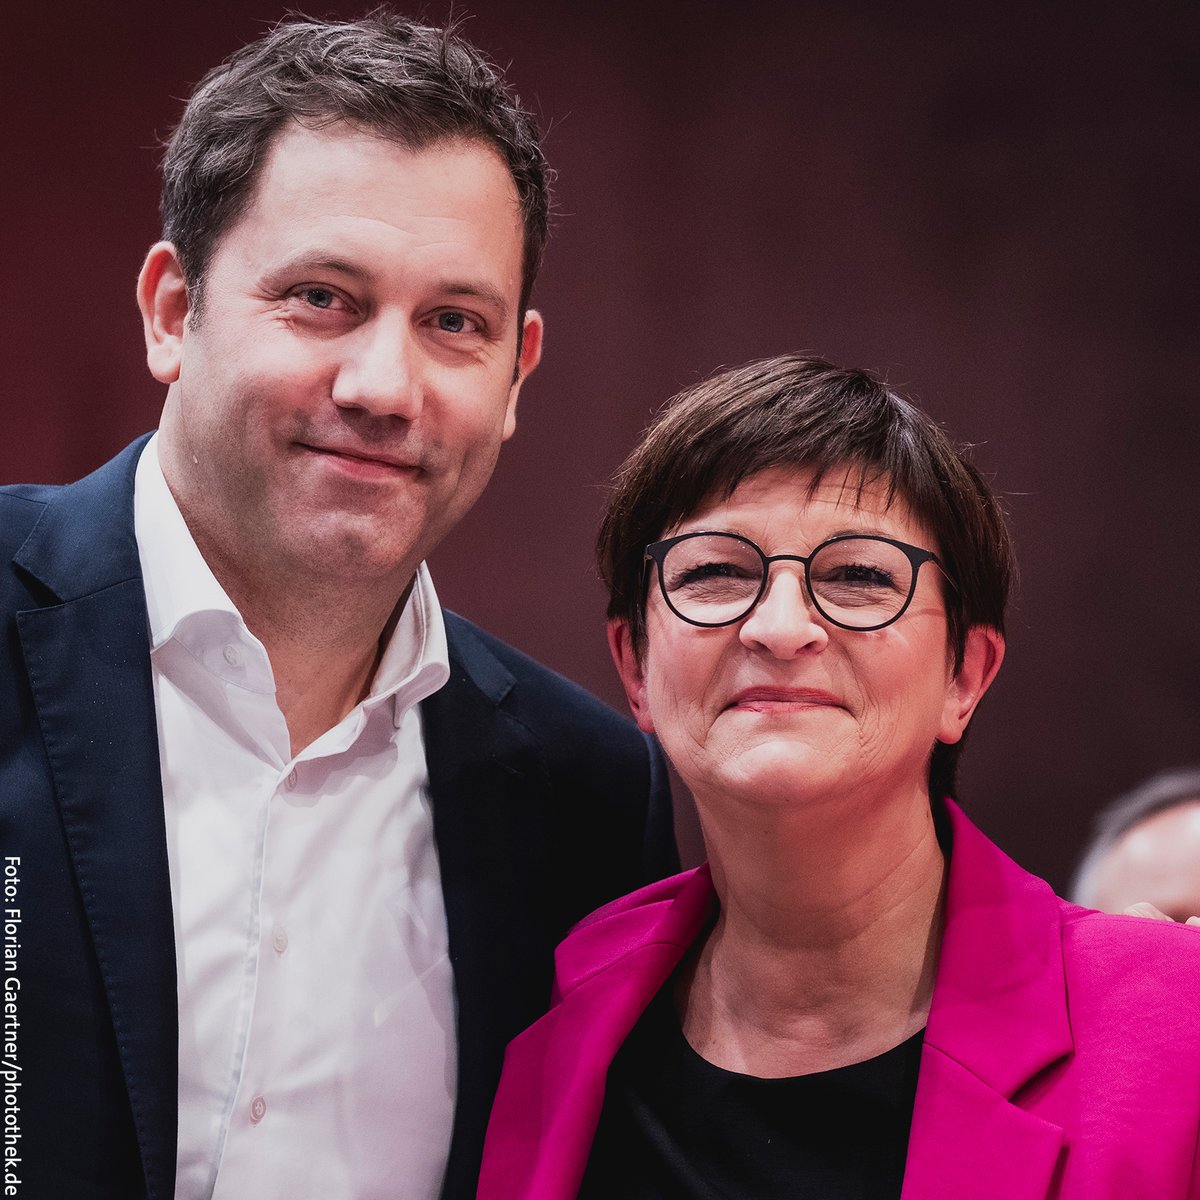 Herzlichen Glückwunsch zur erneuten Wahl als SPD-Parteivorsitzende, Saskia Esken und @larsklingbeil! #SPDBPT23 #SaskiaEsken #LarsKlingbeil @spdde